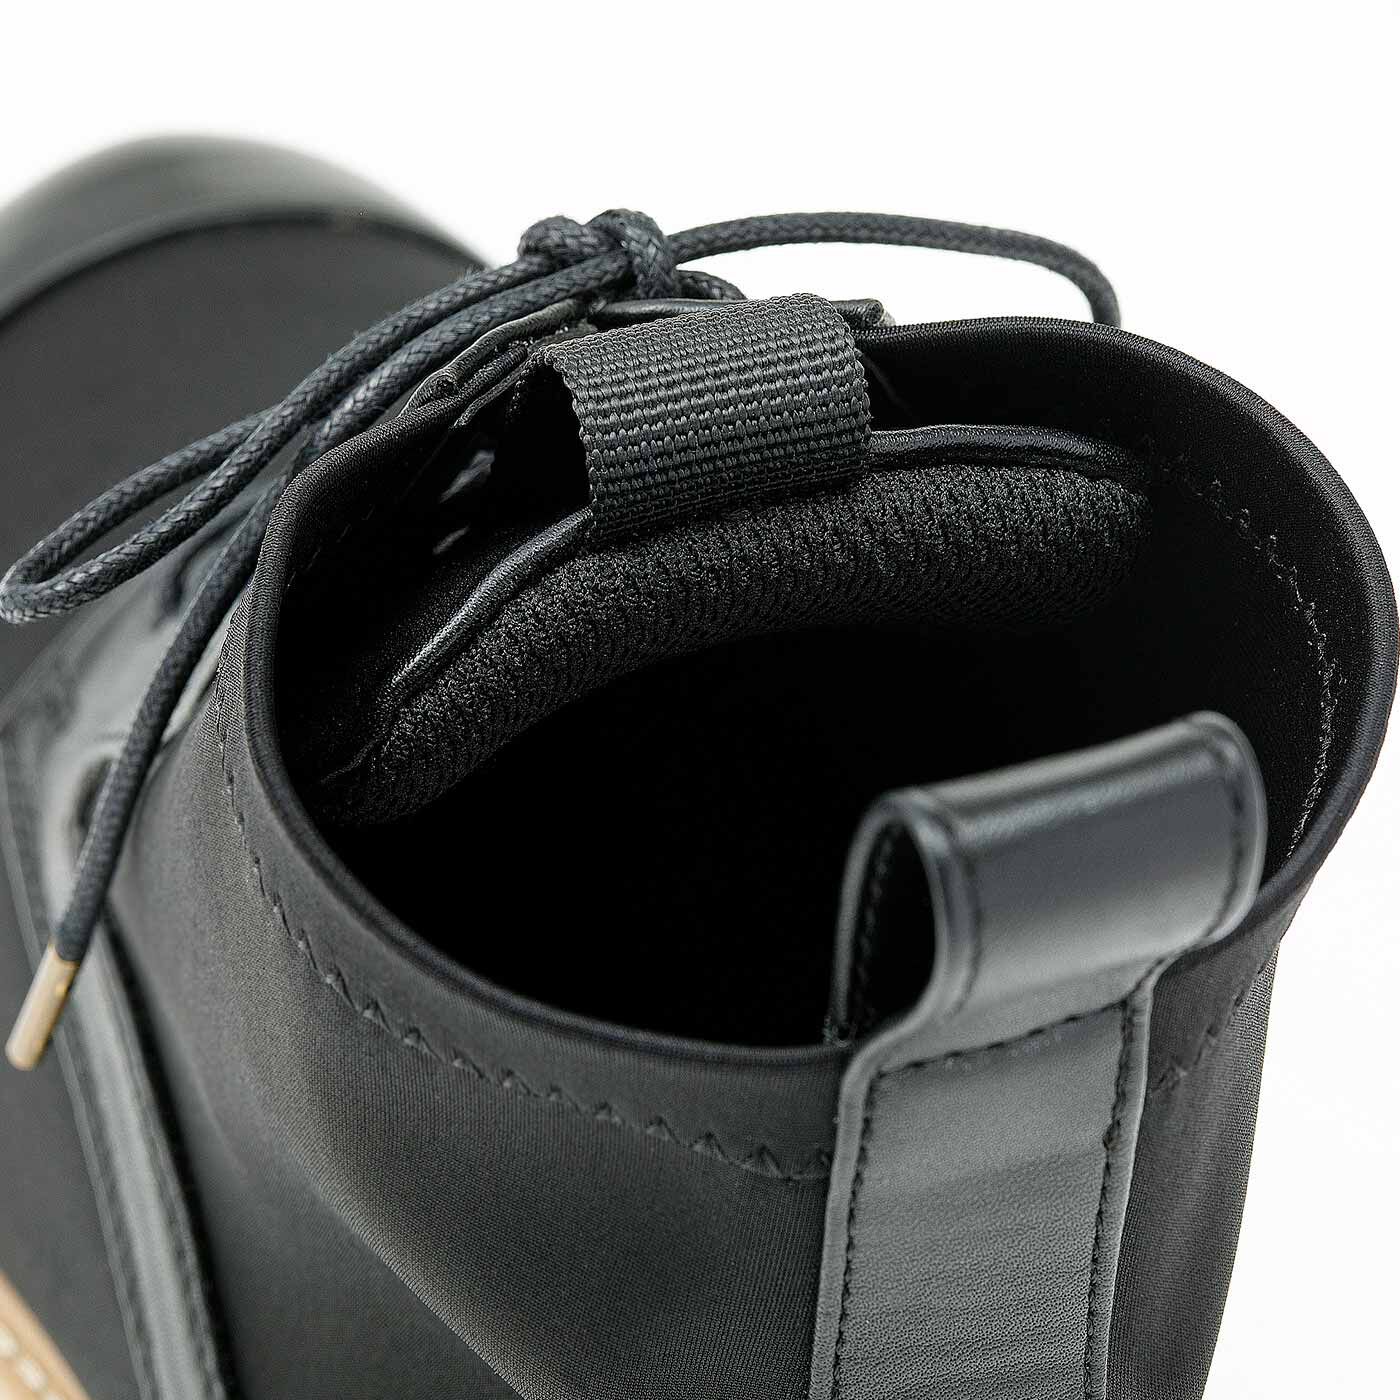 L'AMIPLUS|ラミプリュス　ストレッチ素材が伸びやかで心地よい 脱ぎ履きぐーんとらく マニッシュブーツ|ベロ裏クッションが甲にやさしくフィット。